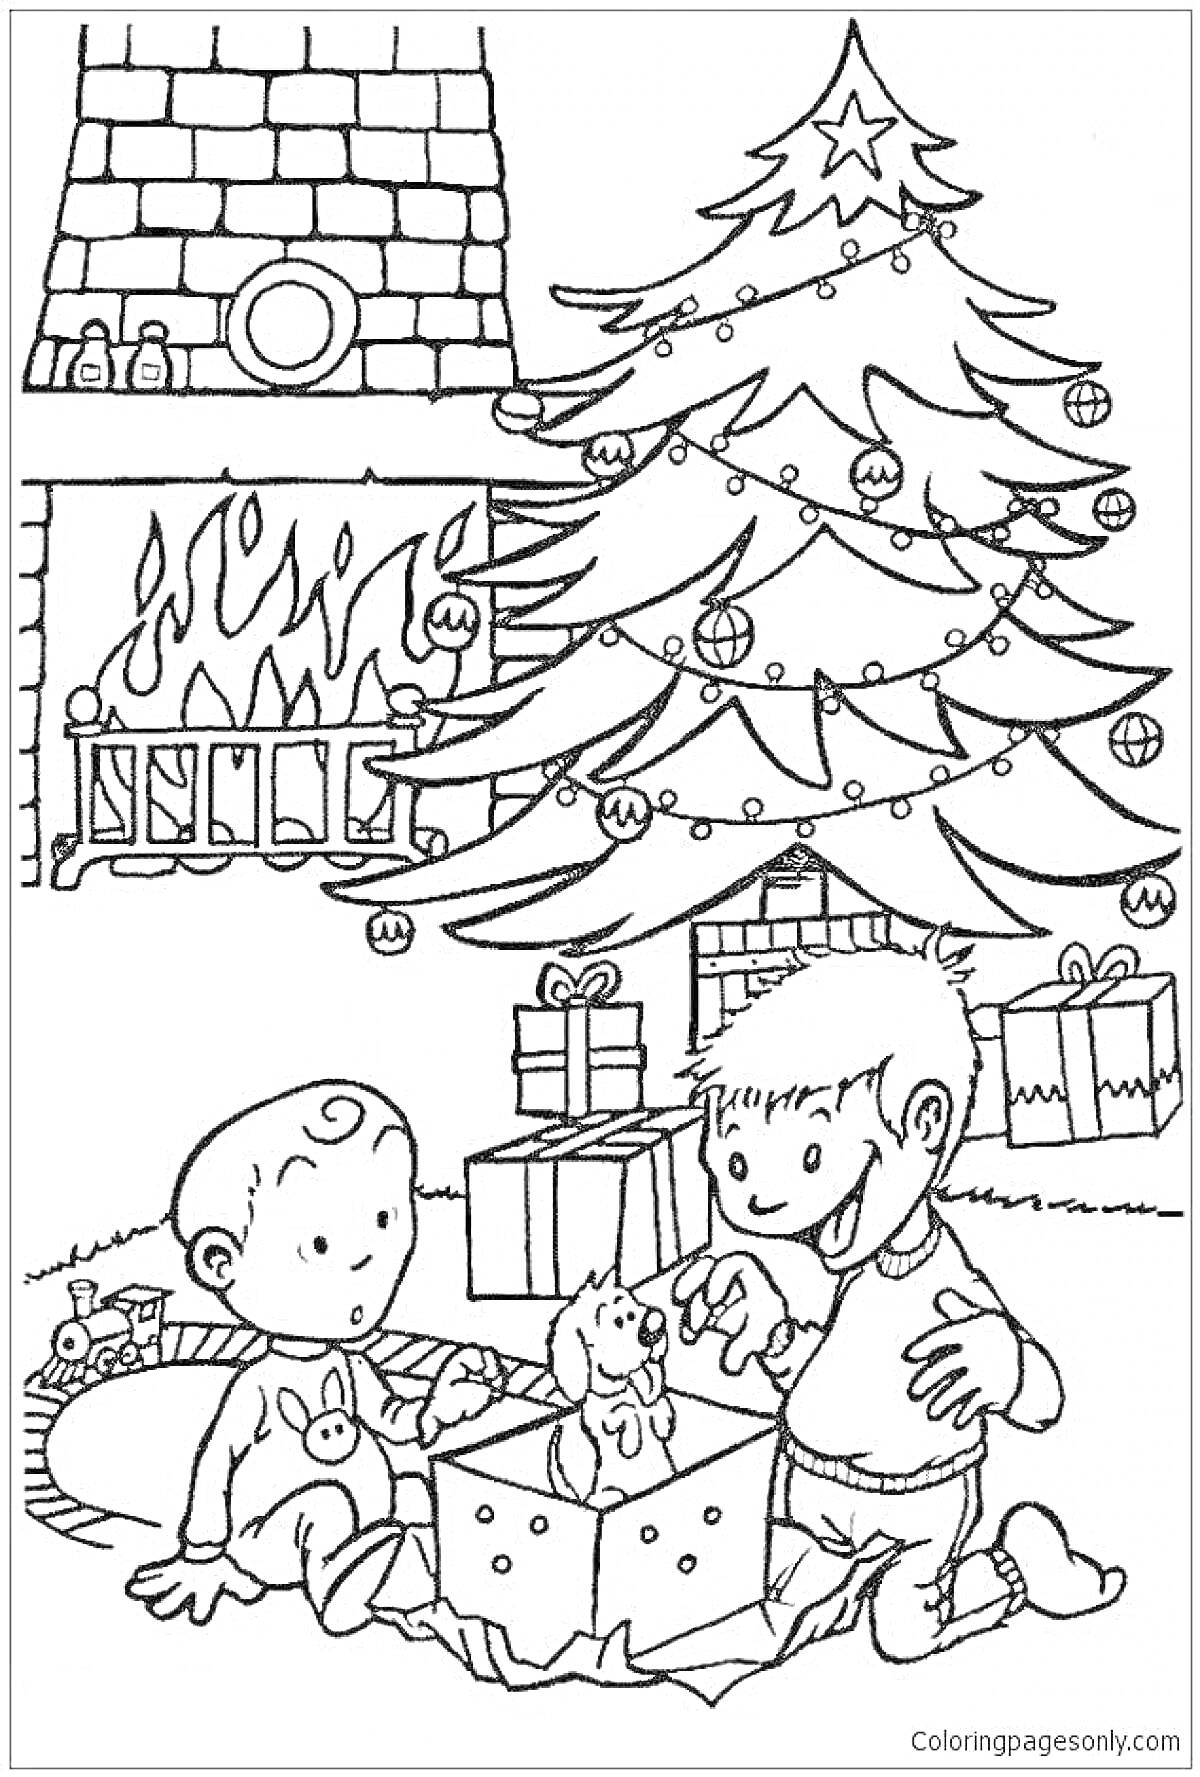 Раскраска Дети около ёлки с подарками и камином на фоне